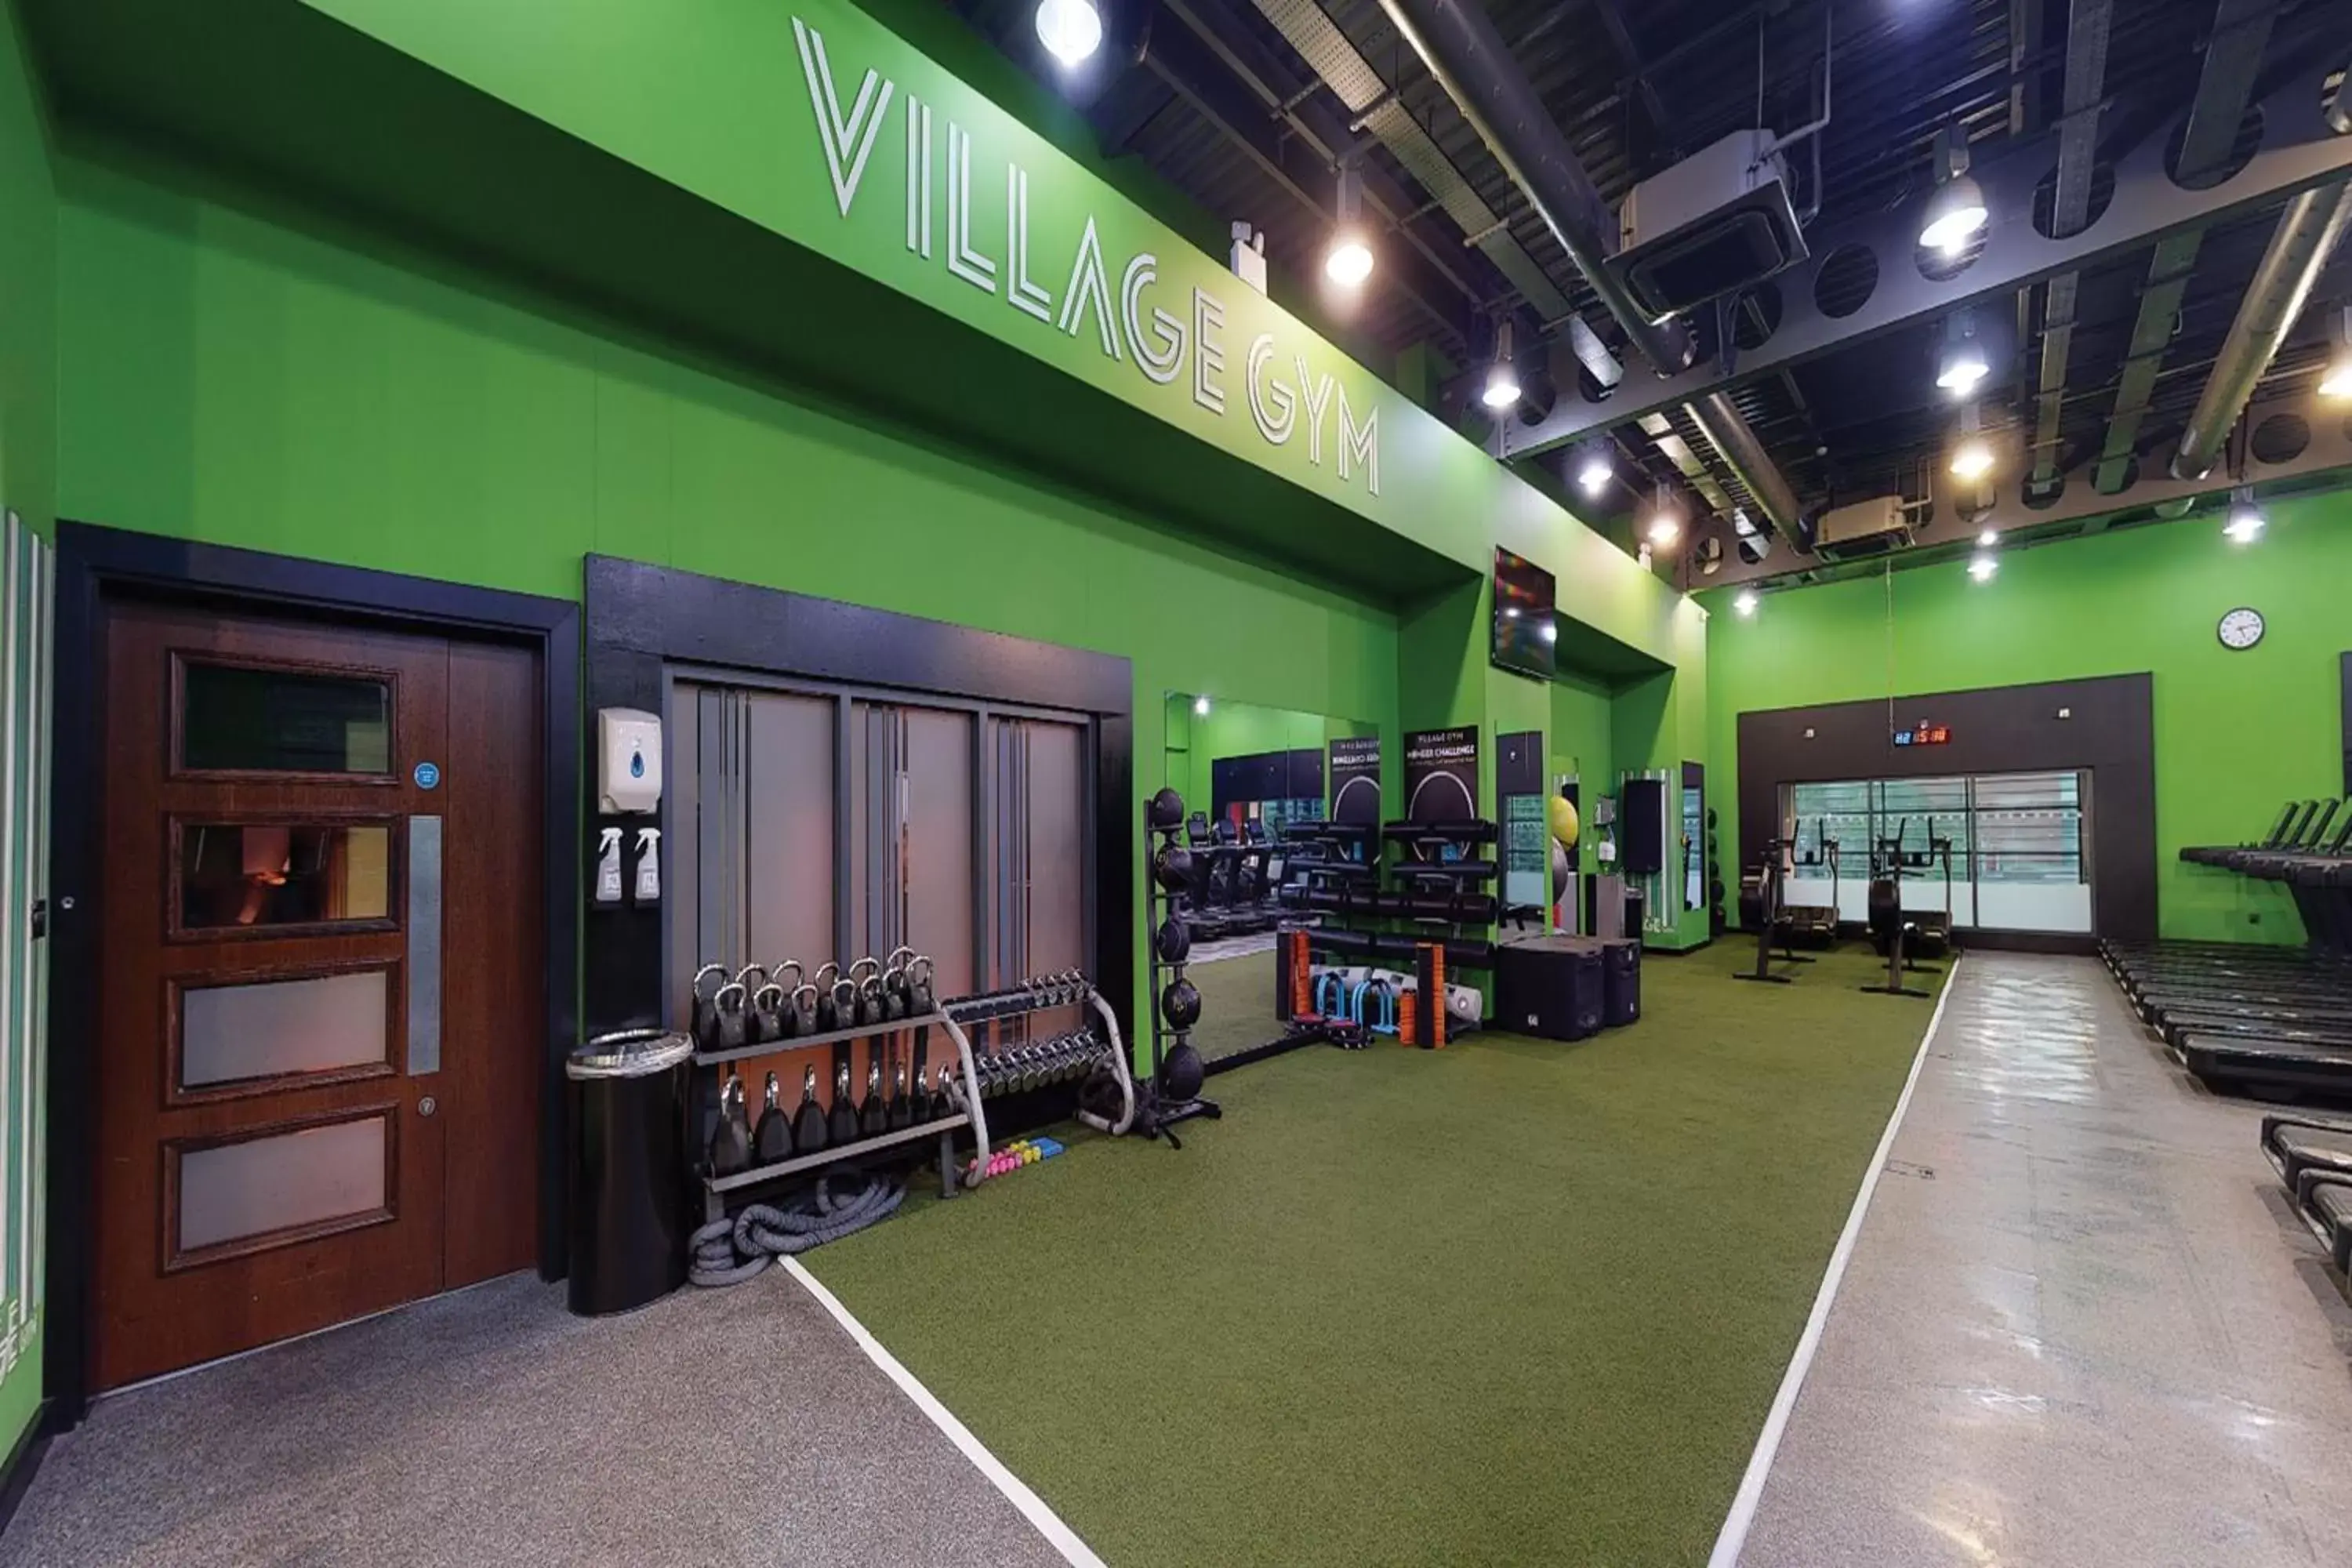 Fitness centre/facilities in Village Hotel Farnborough